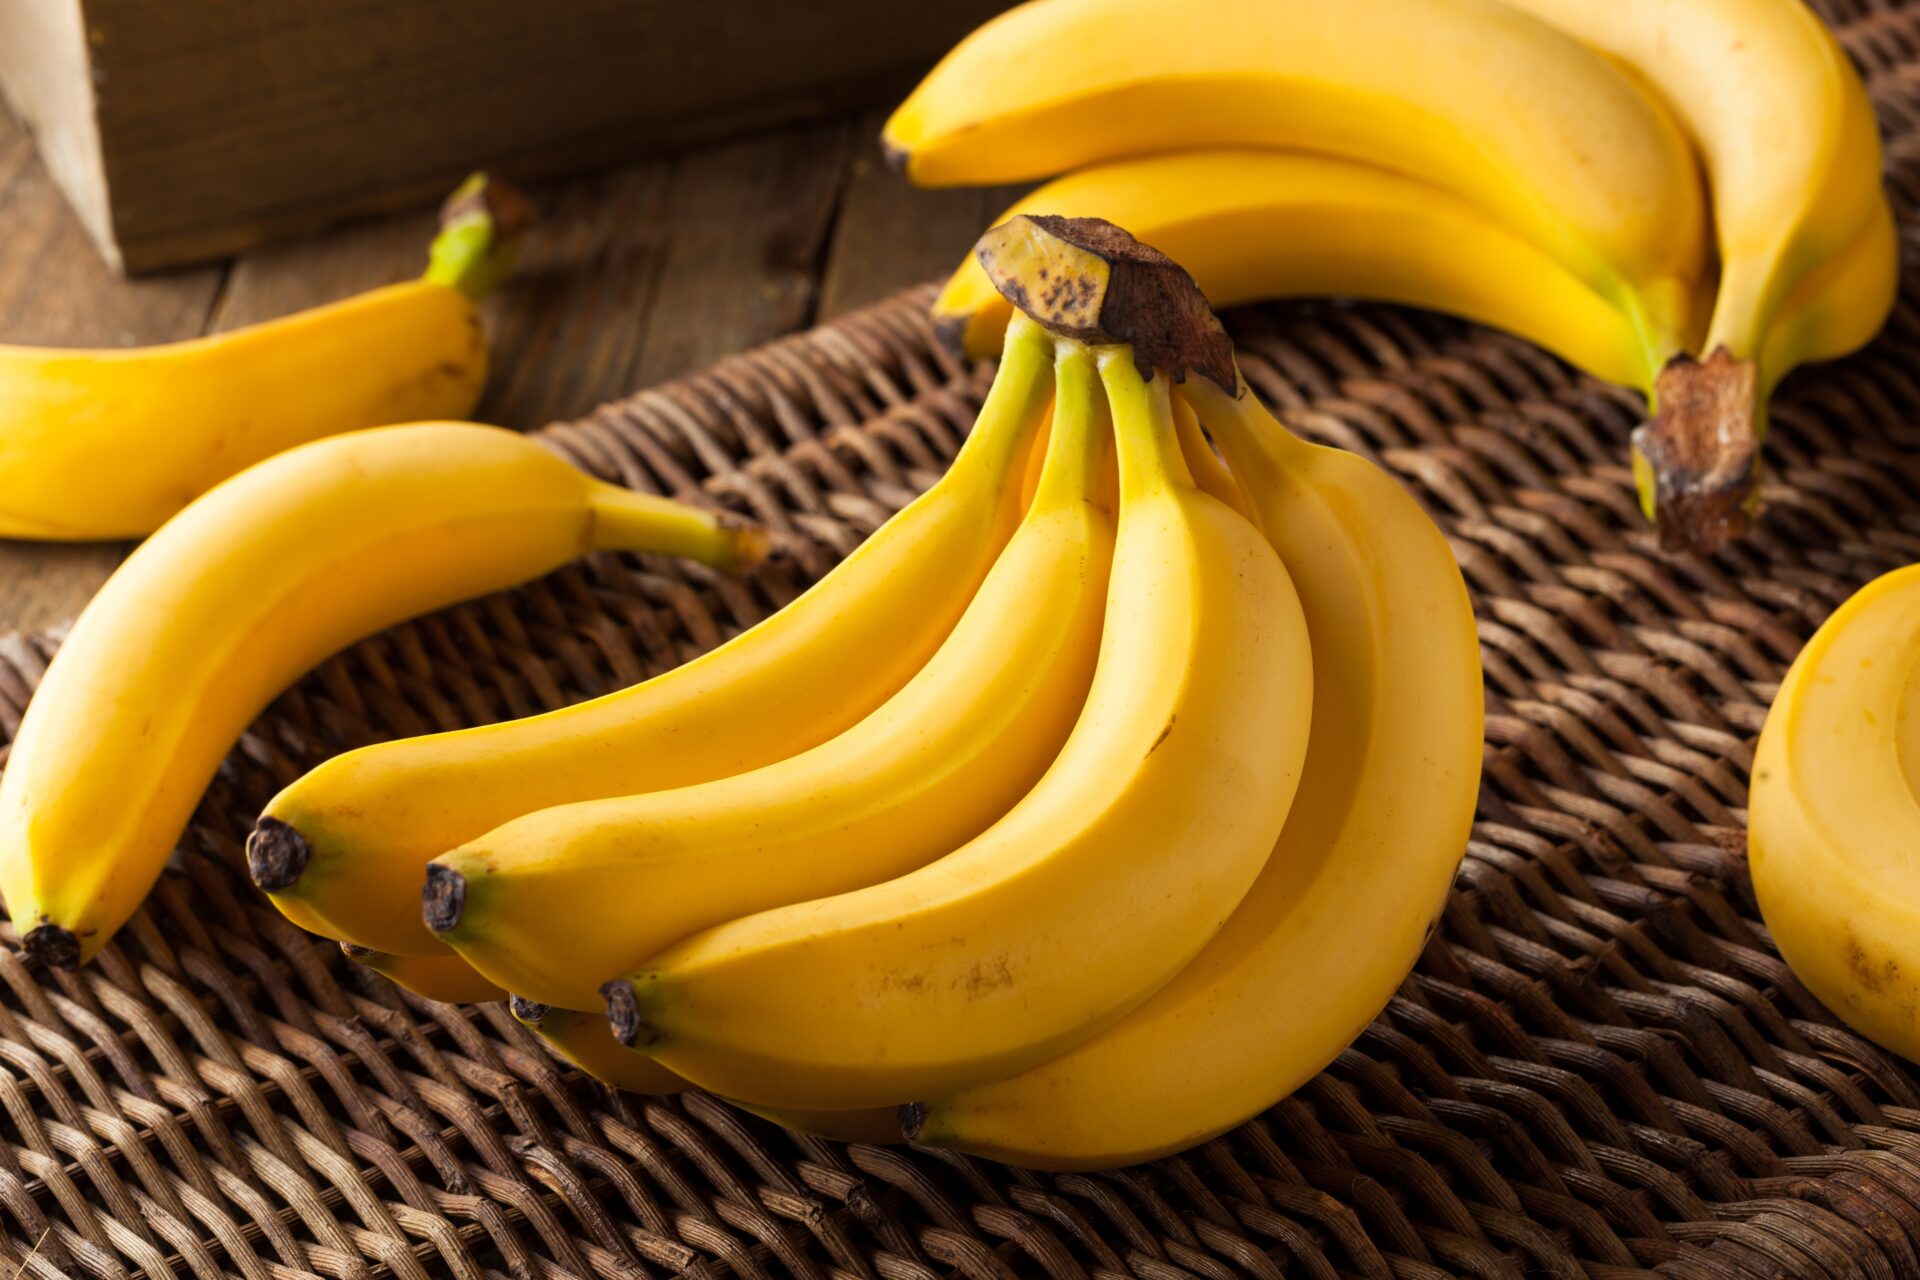 La banane séchée fait-elle maigrir ? - Le blog